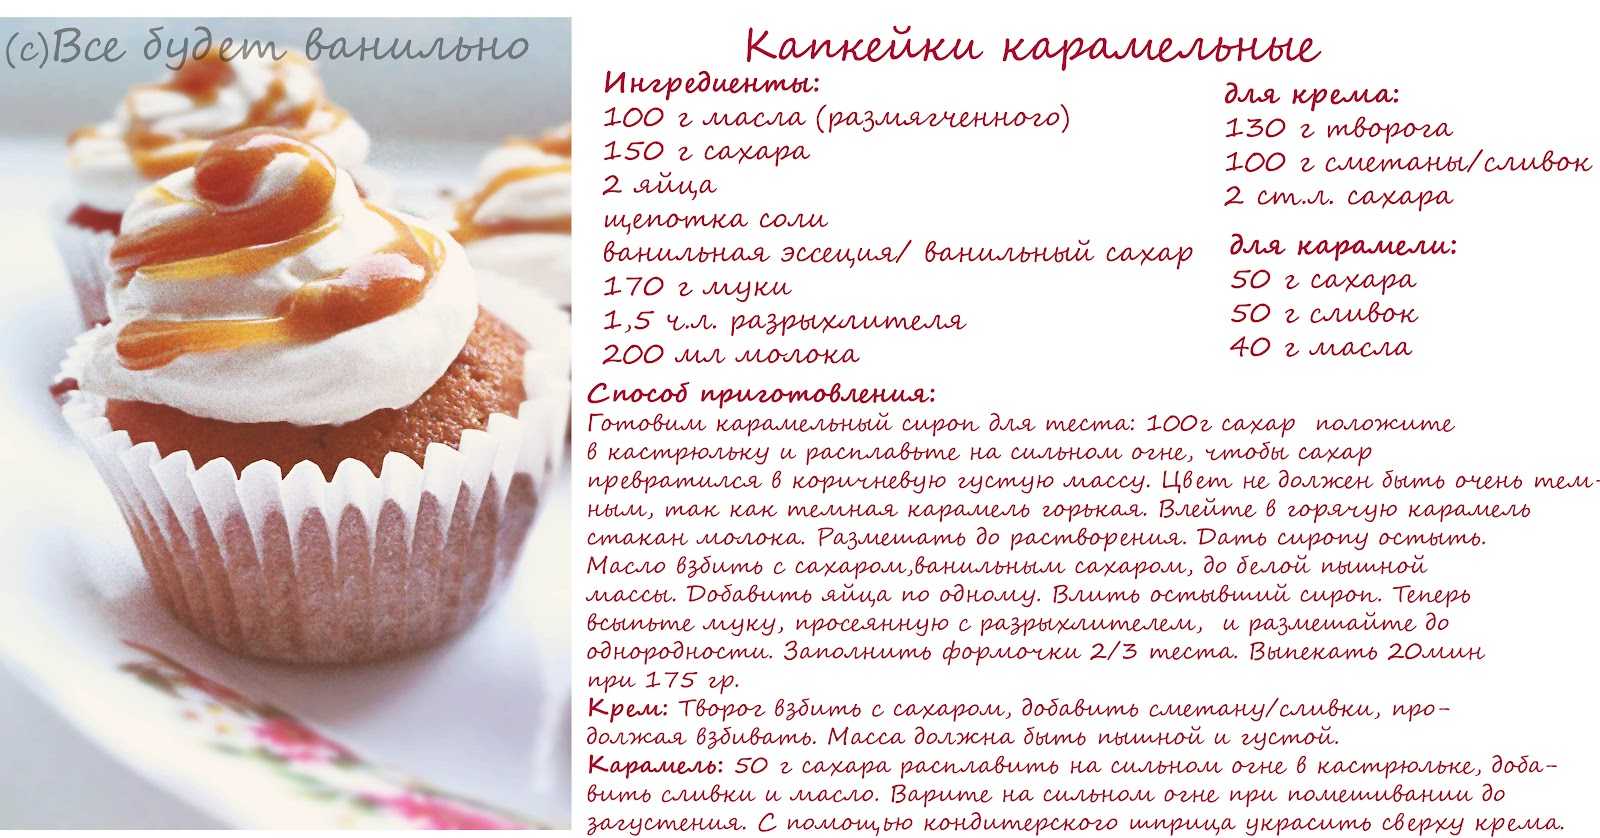 Рецепт капкейков с описанием